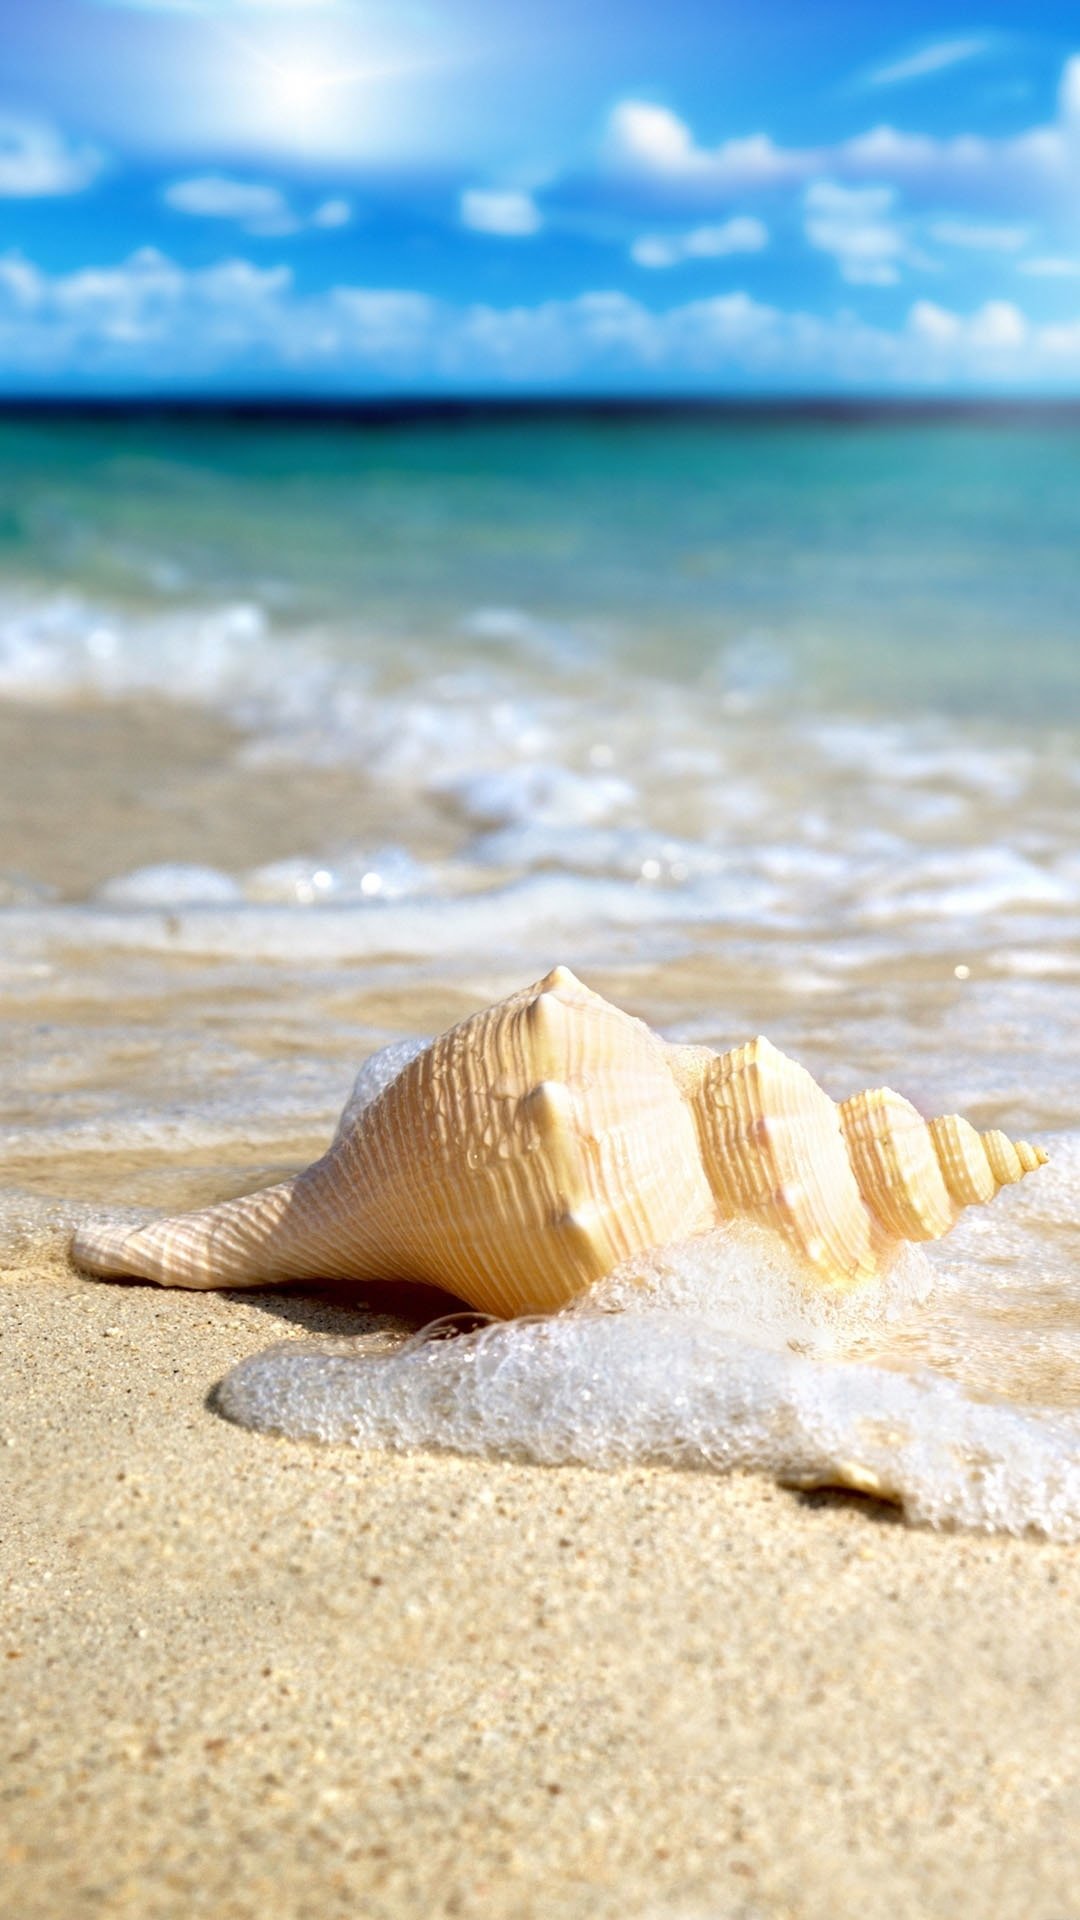 遗落在干净沙滩上的贝壳